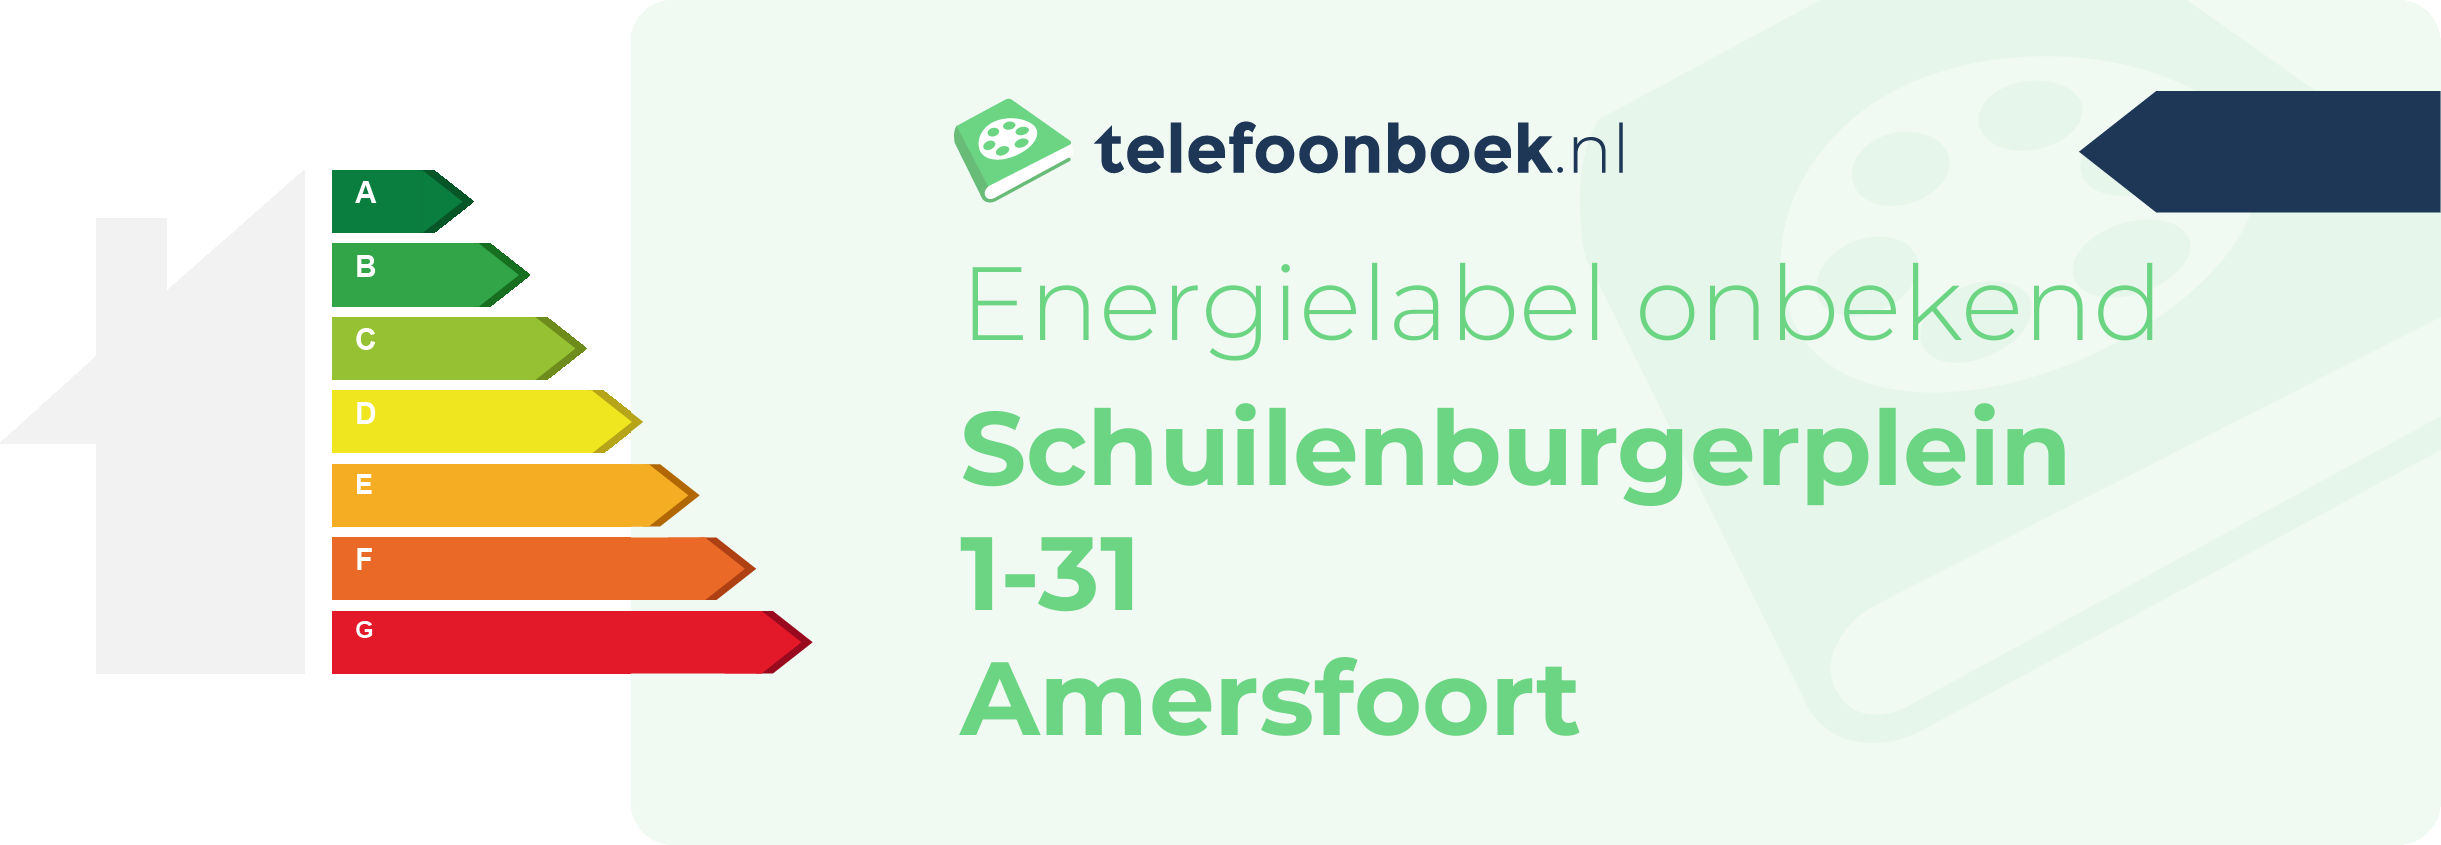 Energielabel Schuilenburgerplein 1-31 Amersfoort